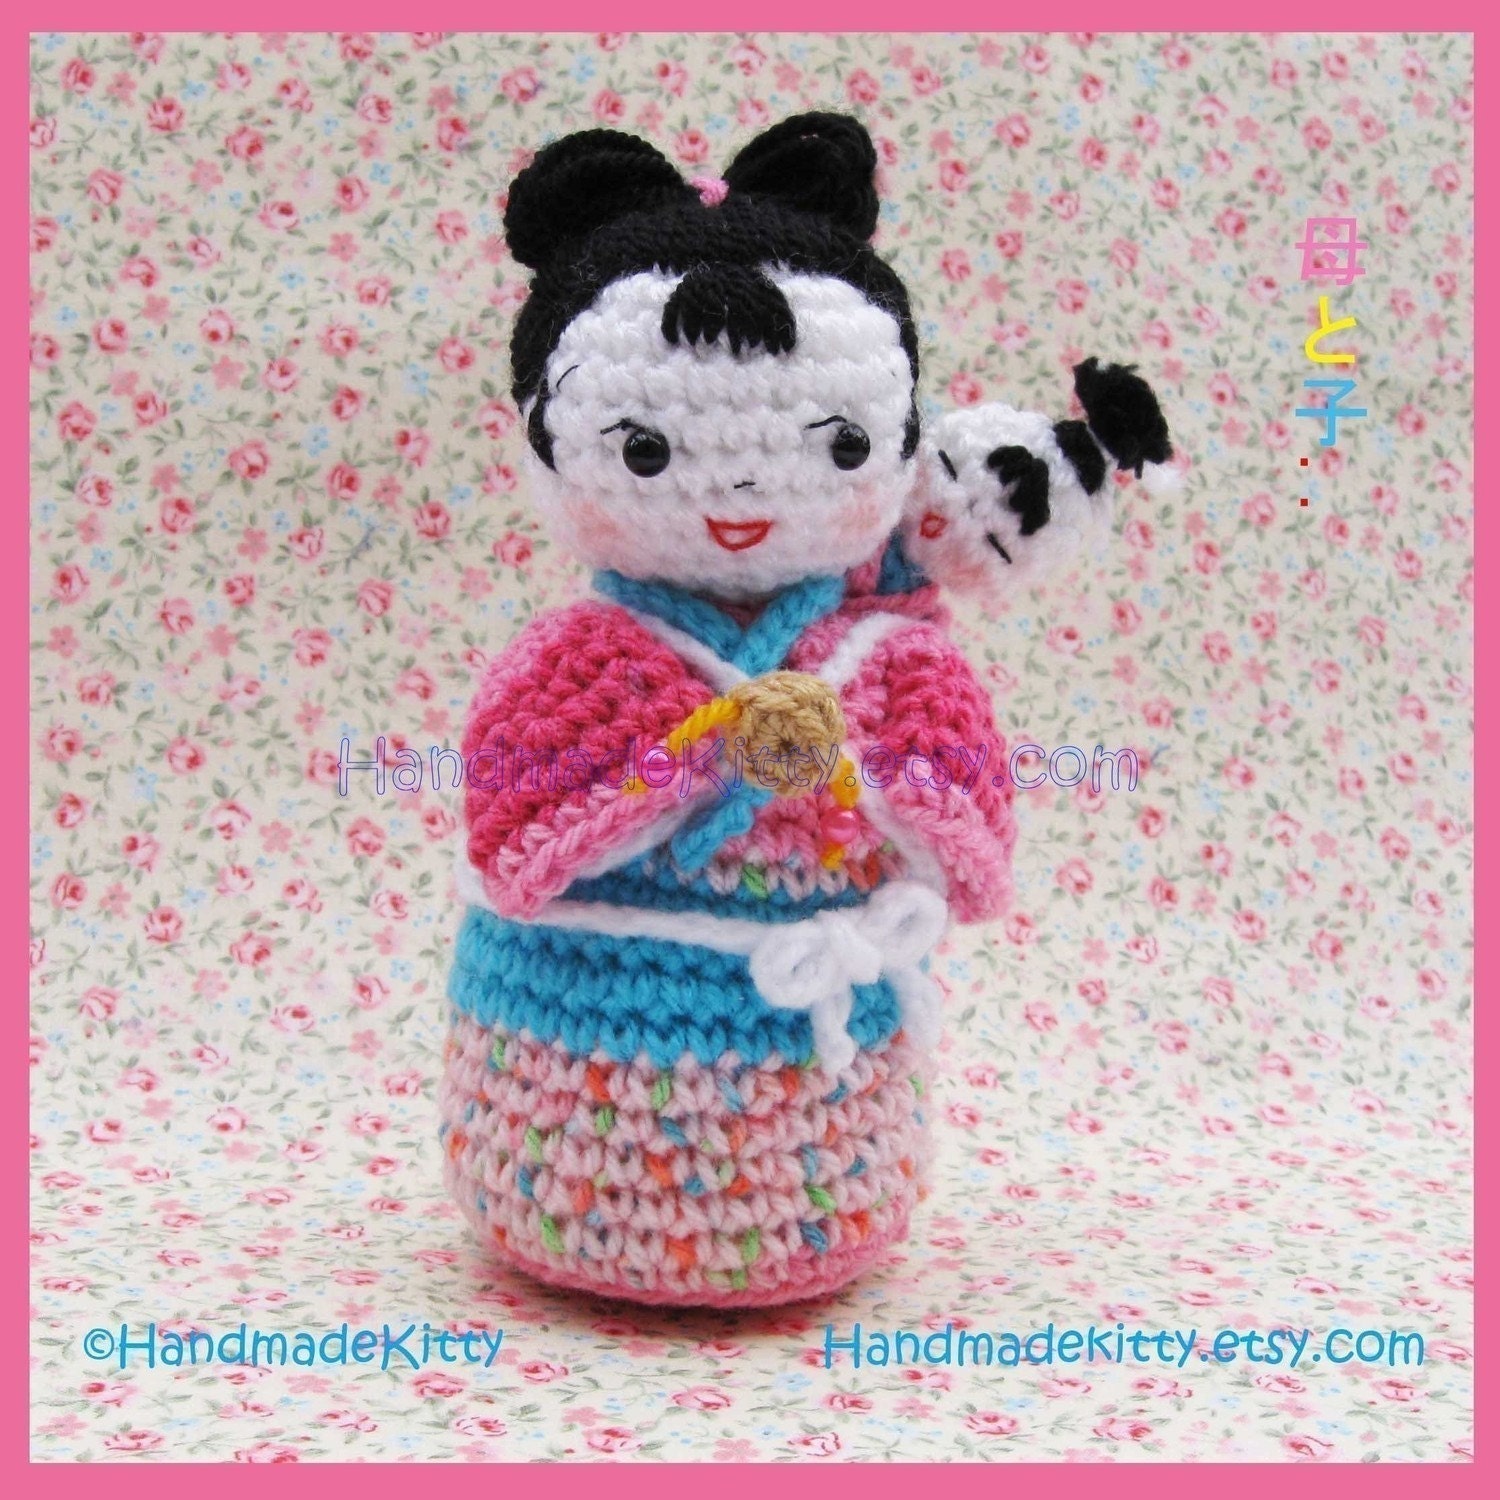 Japanese Kokeshi mother and baby Amigurumi Crochet Pattern by HandmadeKitty